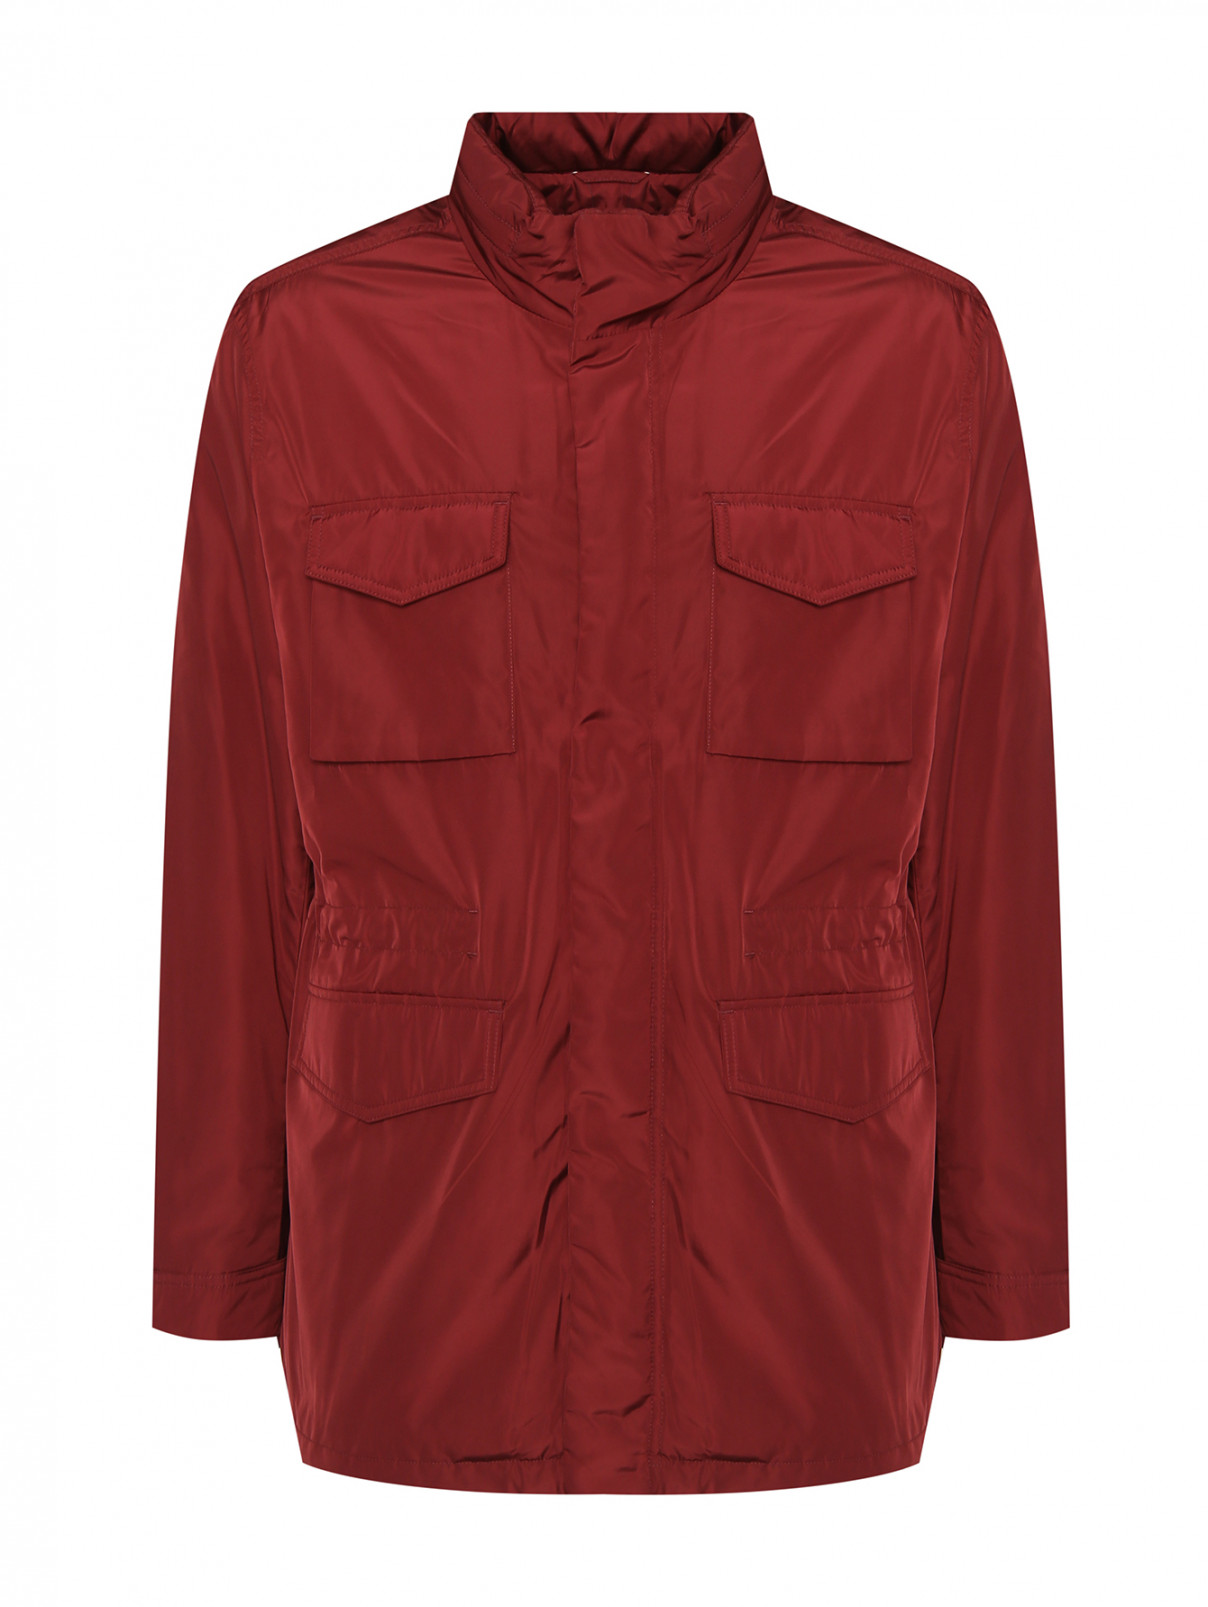 Куртка на молнии с карманами Michael by MK  –  Общий вид  – Цвет:  Красный